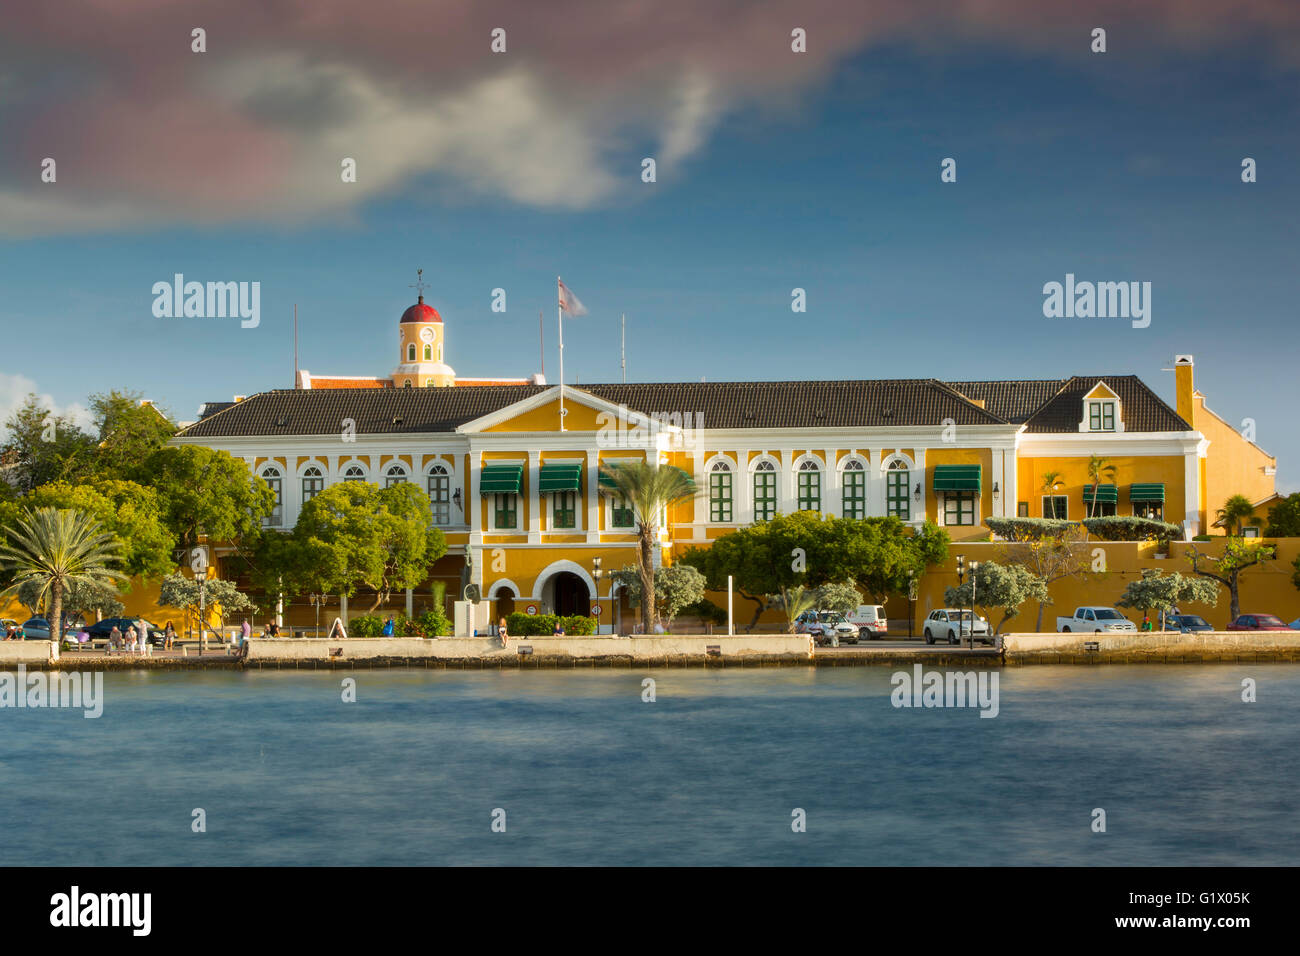 Gouverneurs Manison, Willemstad, Curacao, Niederlande-Antillen Stockfoto